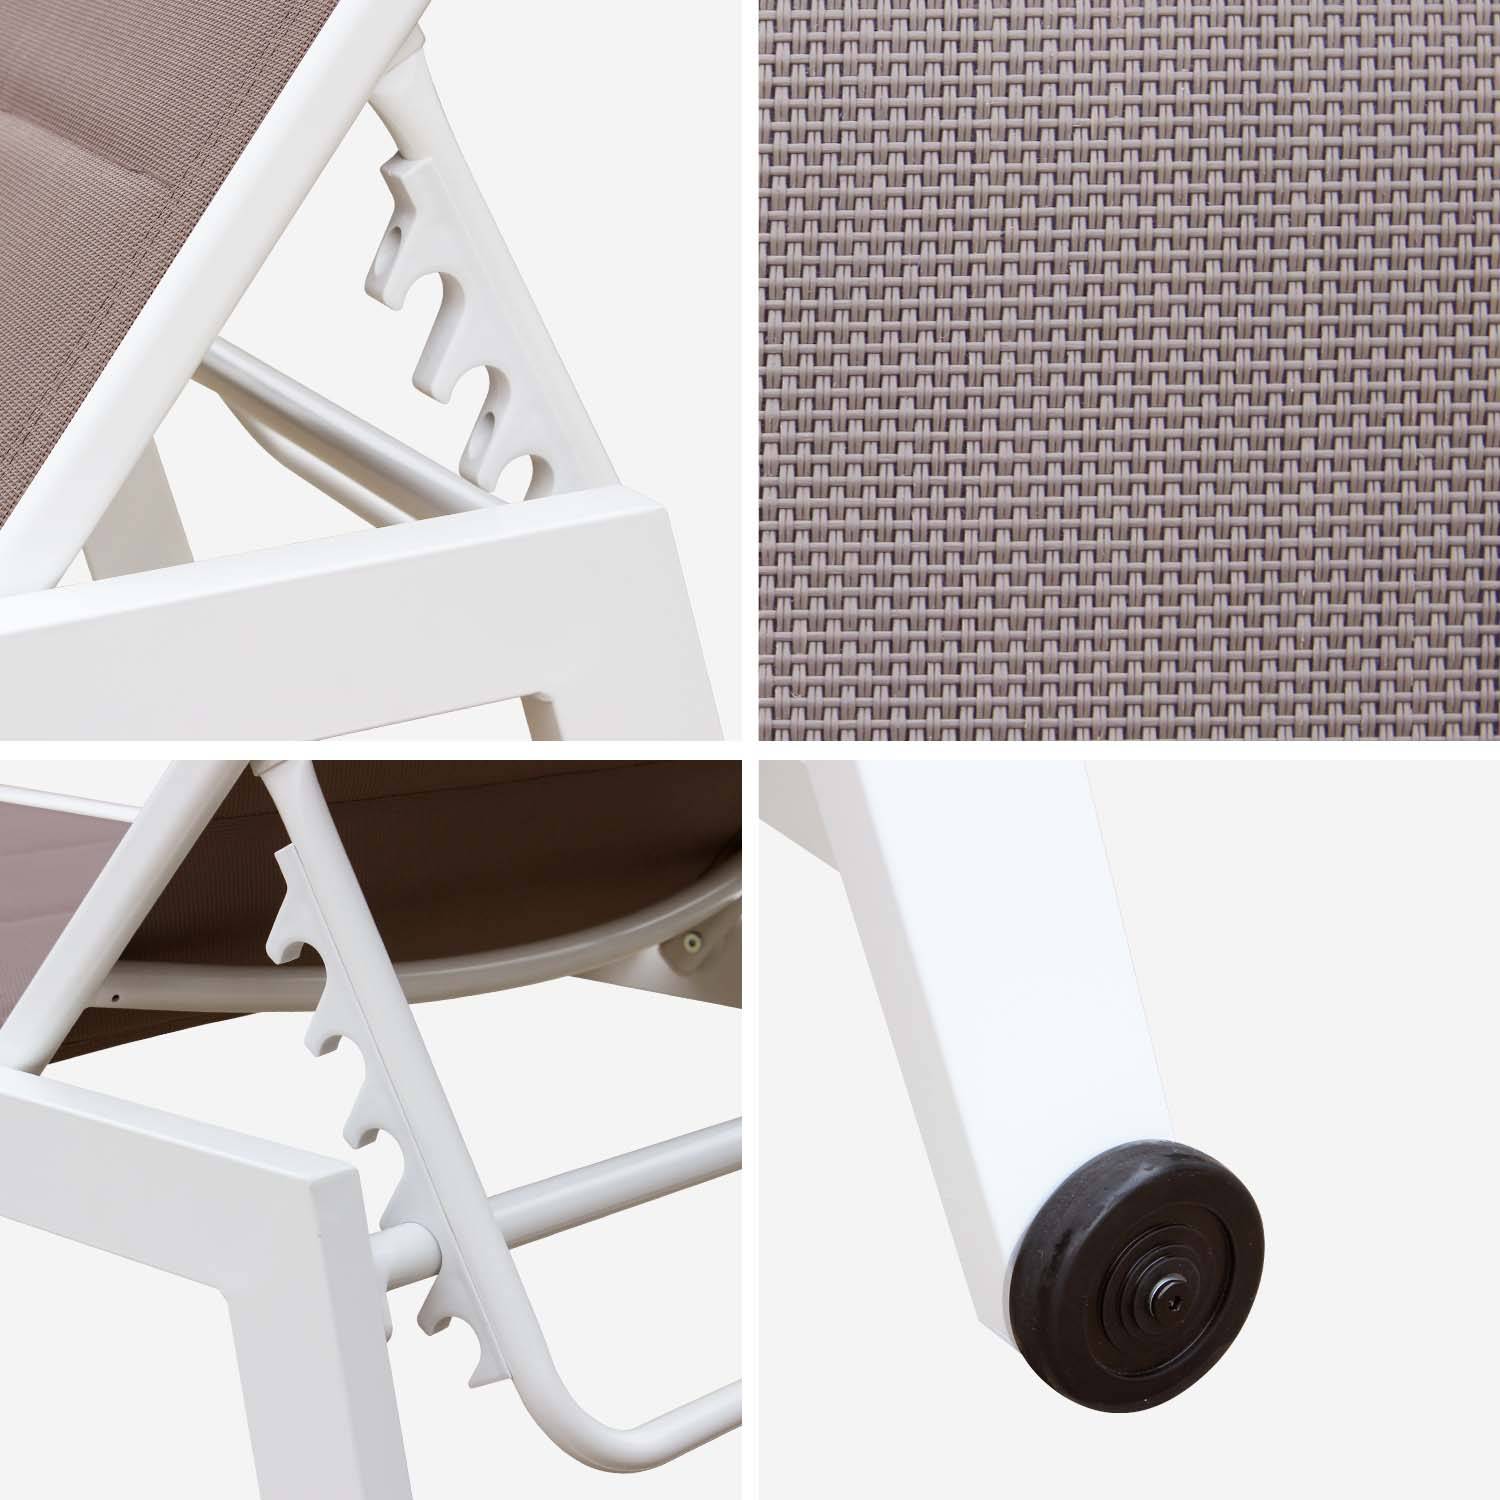 Sonnenliege - Solis - Liegestuhl aus gestepptem Textilene mit 6 Positionen aus Textilene und Aluminium, weißes Gestell, taupefarbenes Textilene Photo6